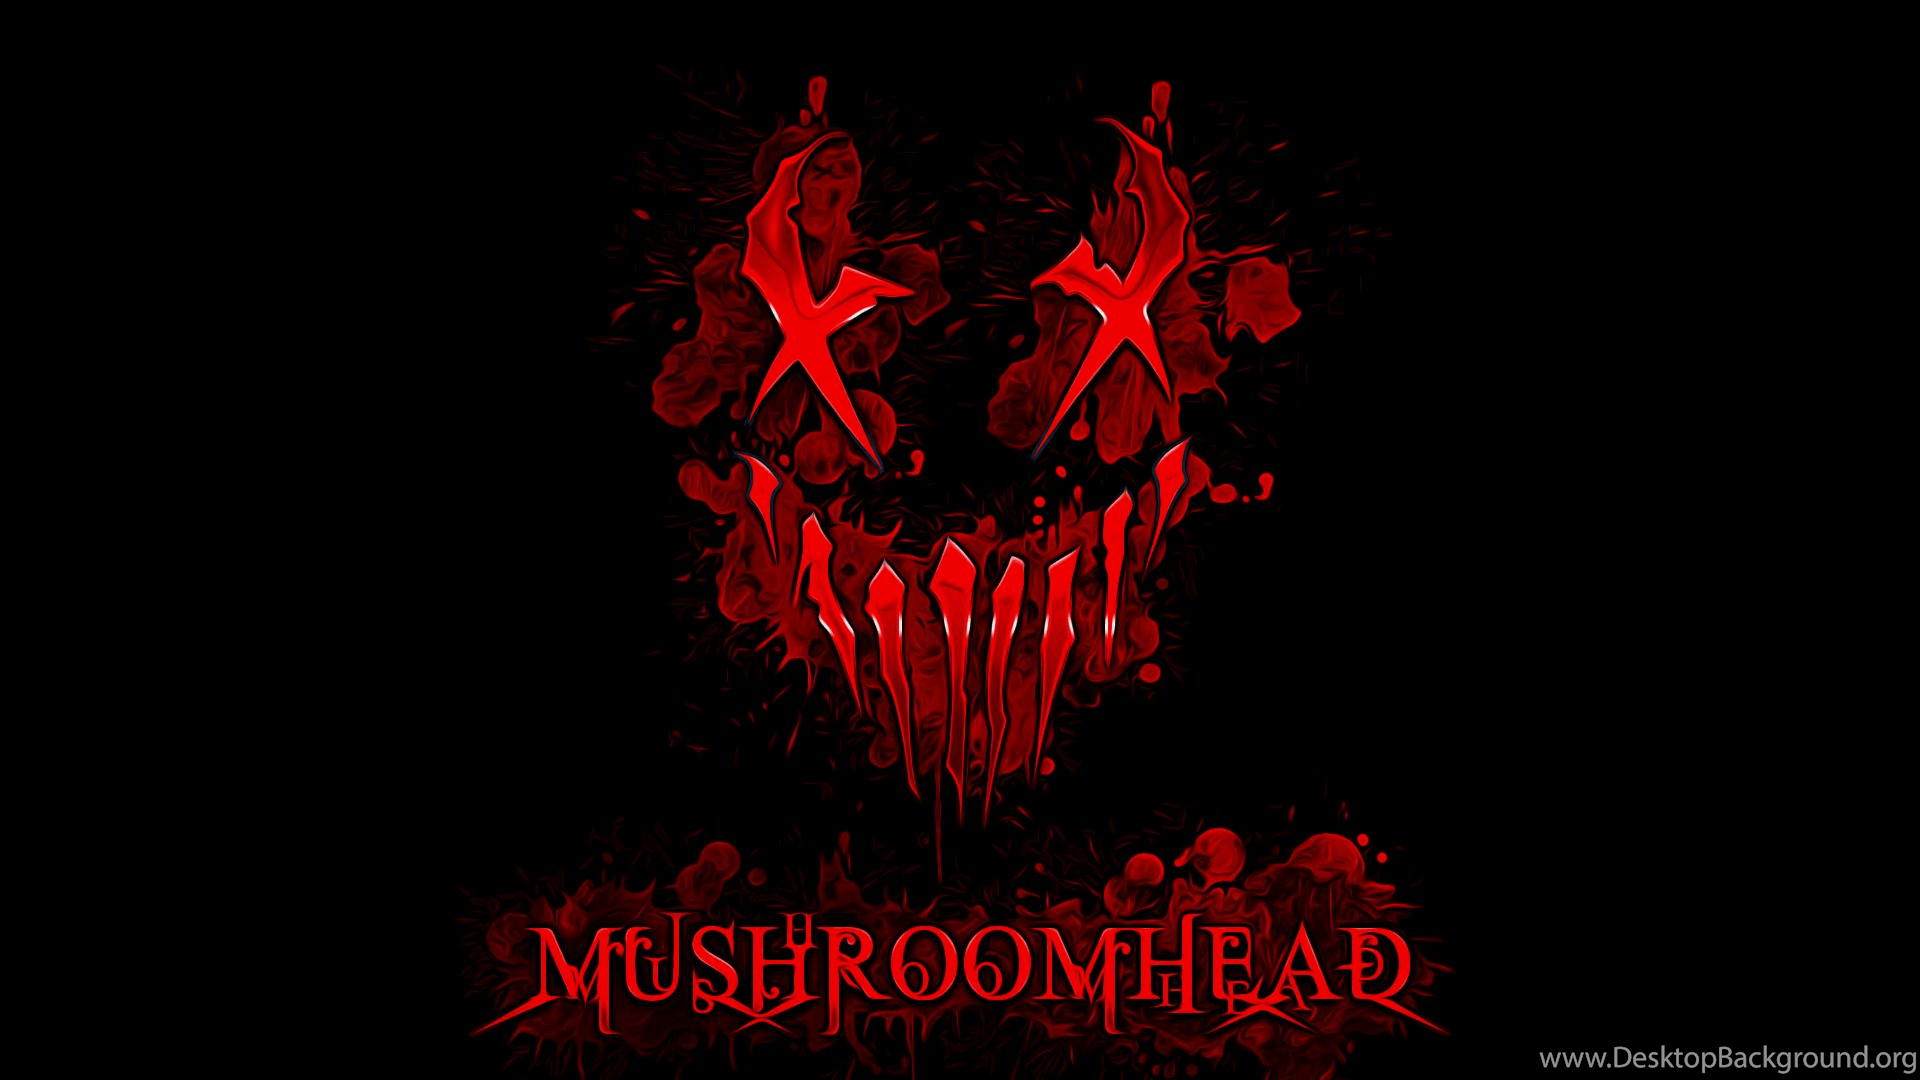 Mushroomhead Logo - Mushroomhead Logo Wallpapers By Dustinsilver On DeviantArt Desktop ...